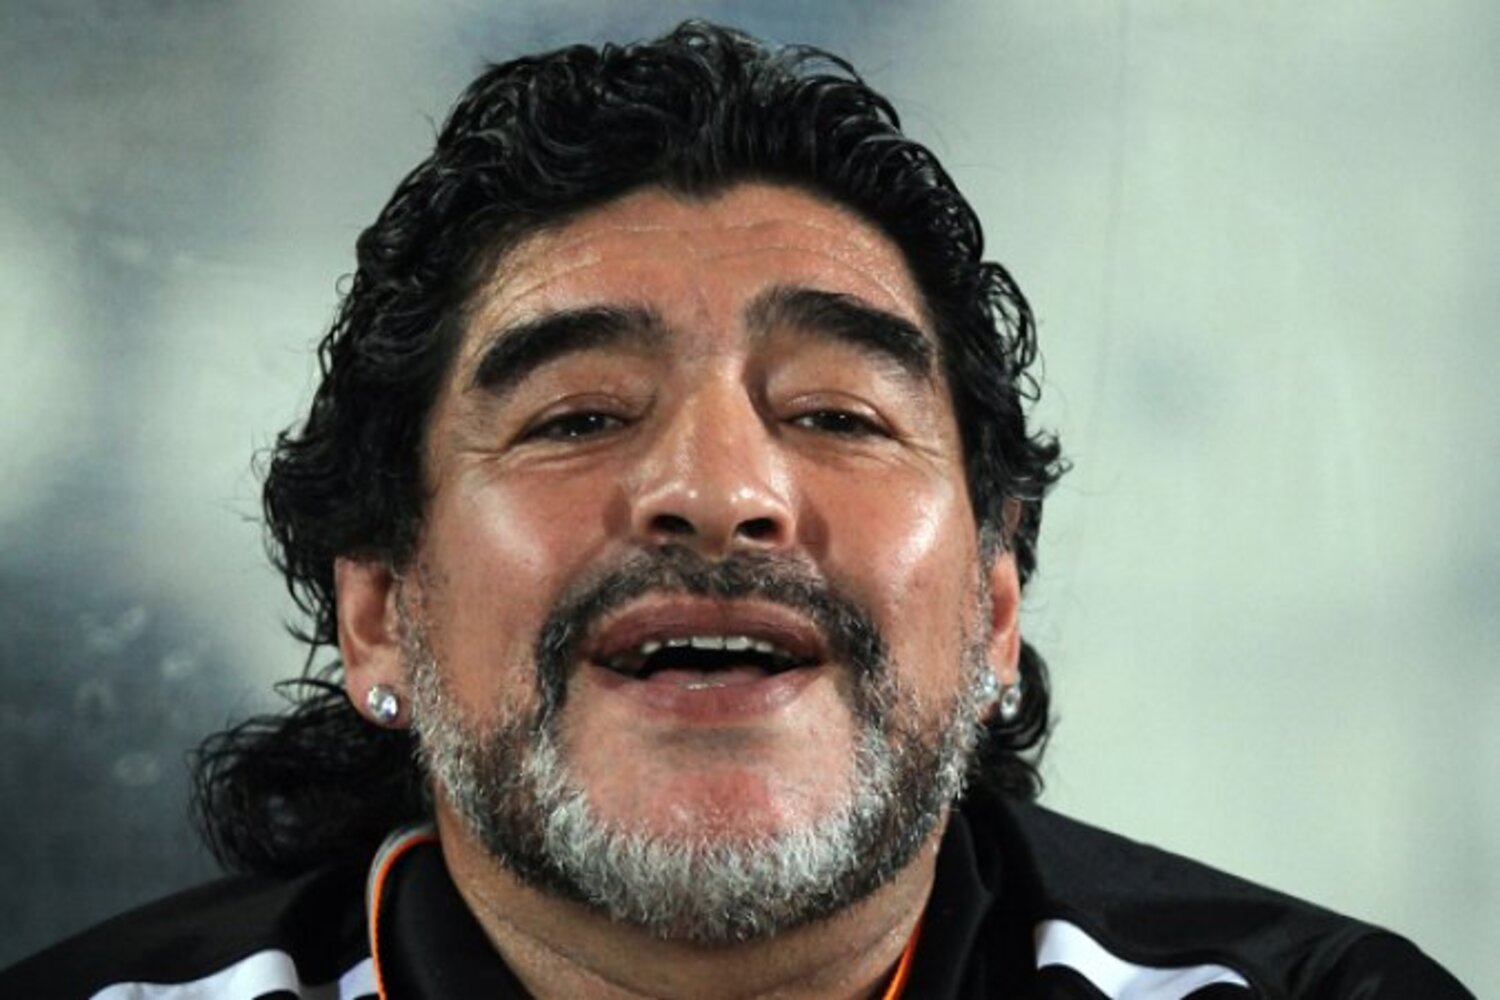 OFICJALNIE: Maradona znowu trenerem. „Największe wyzwanie w mojej karierze”